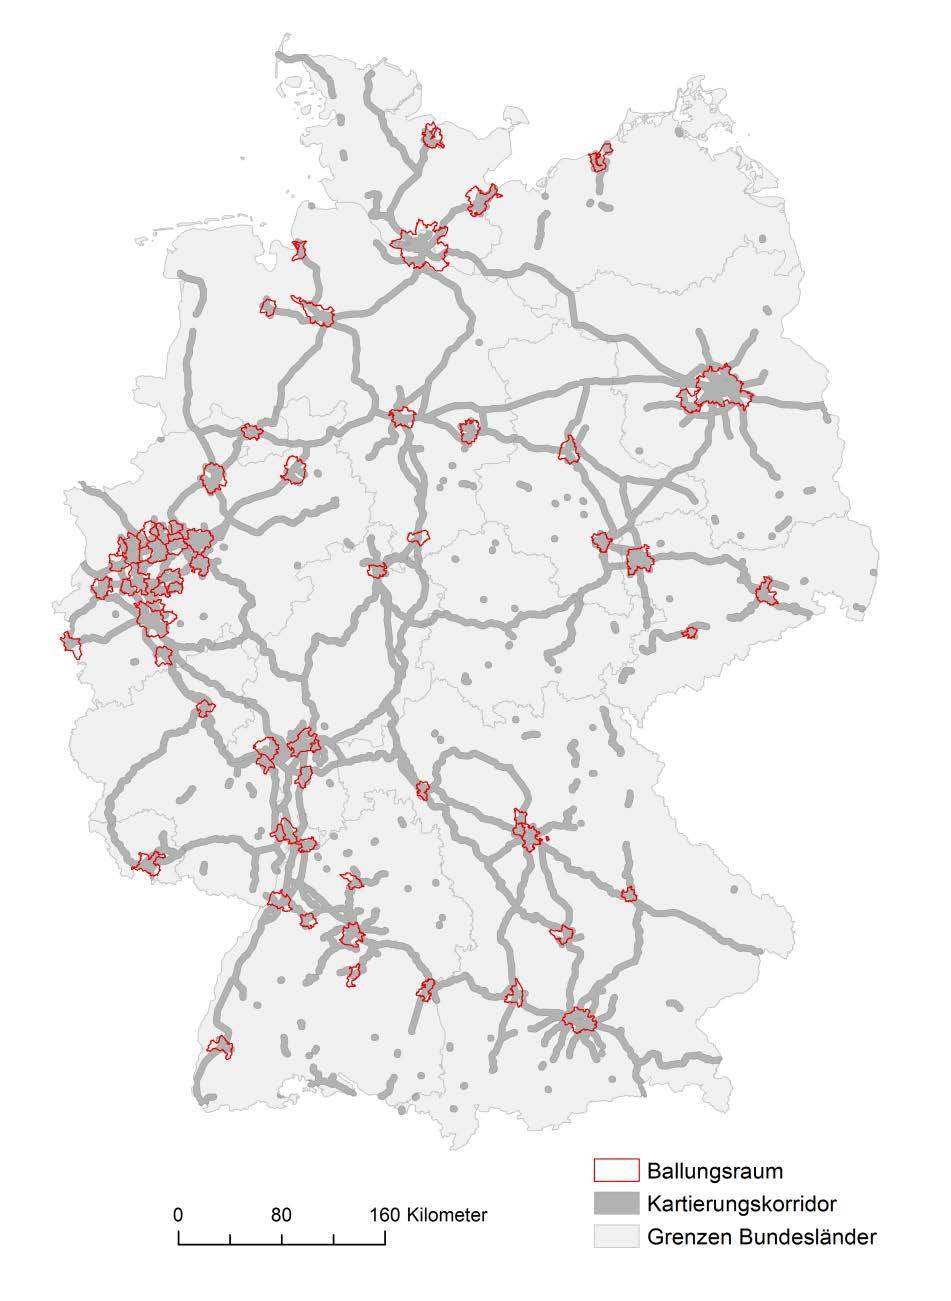 Berechnungsgebiet ca. 16.500 km Bahnstrecke ca. 30.000 km Gleise 5 km-breiter Kartierungskorridor ca. 56.000 km 2 Rechengebiet ca. 19 Mio.